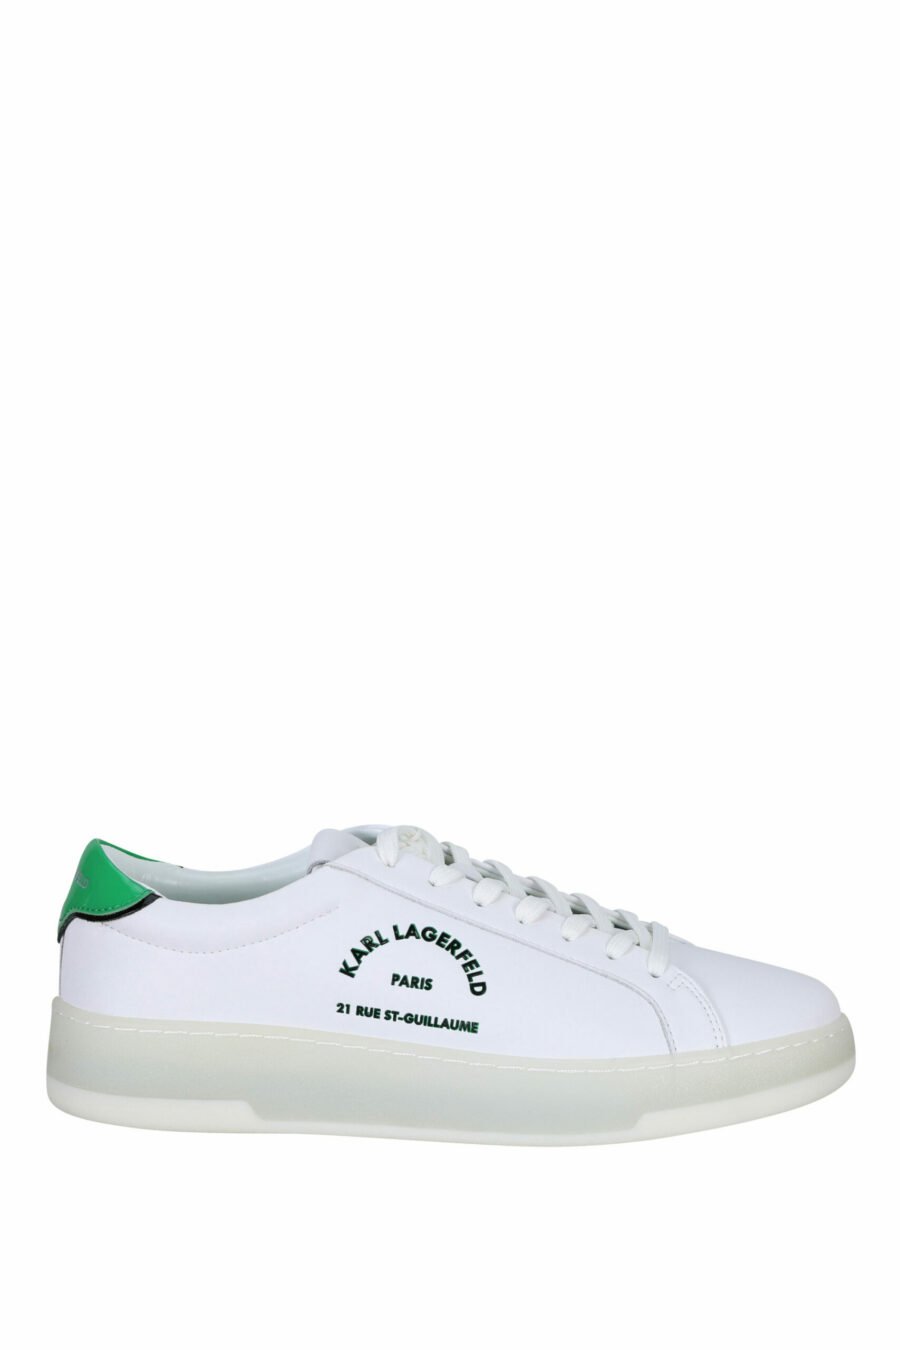 Baskets blanches avec détails verts et logo "st rue guillaume" - 5059529291289 scaled